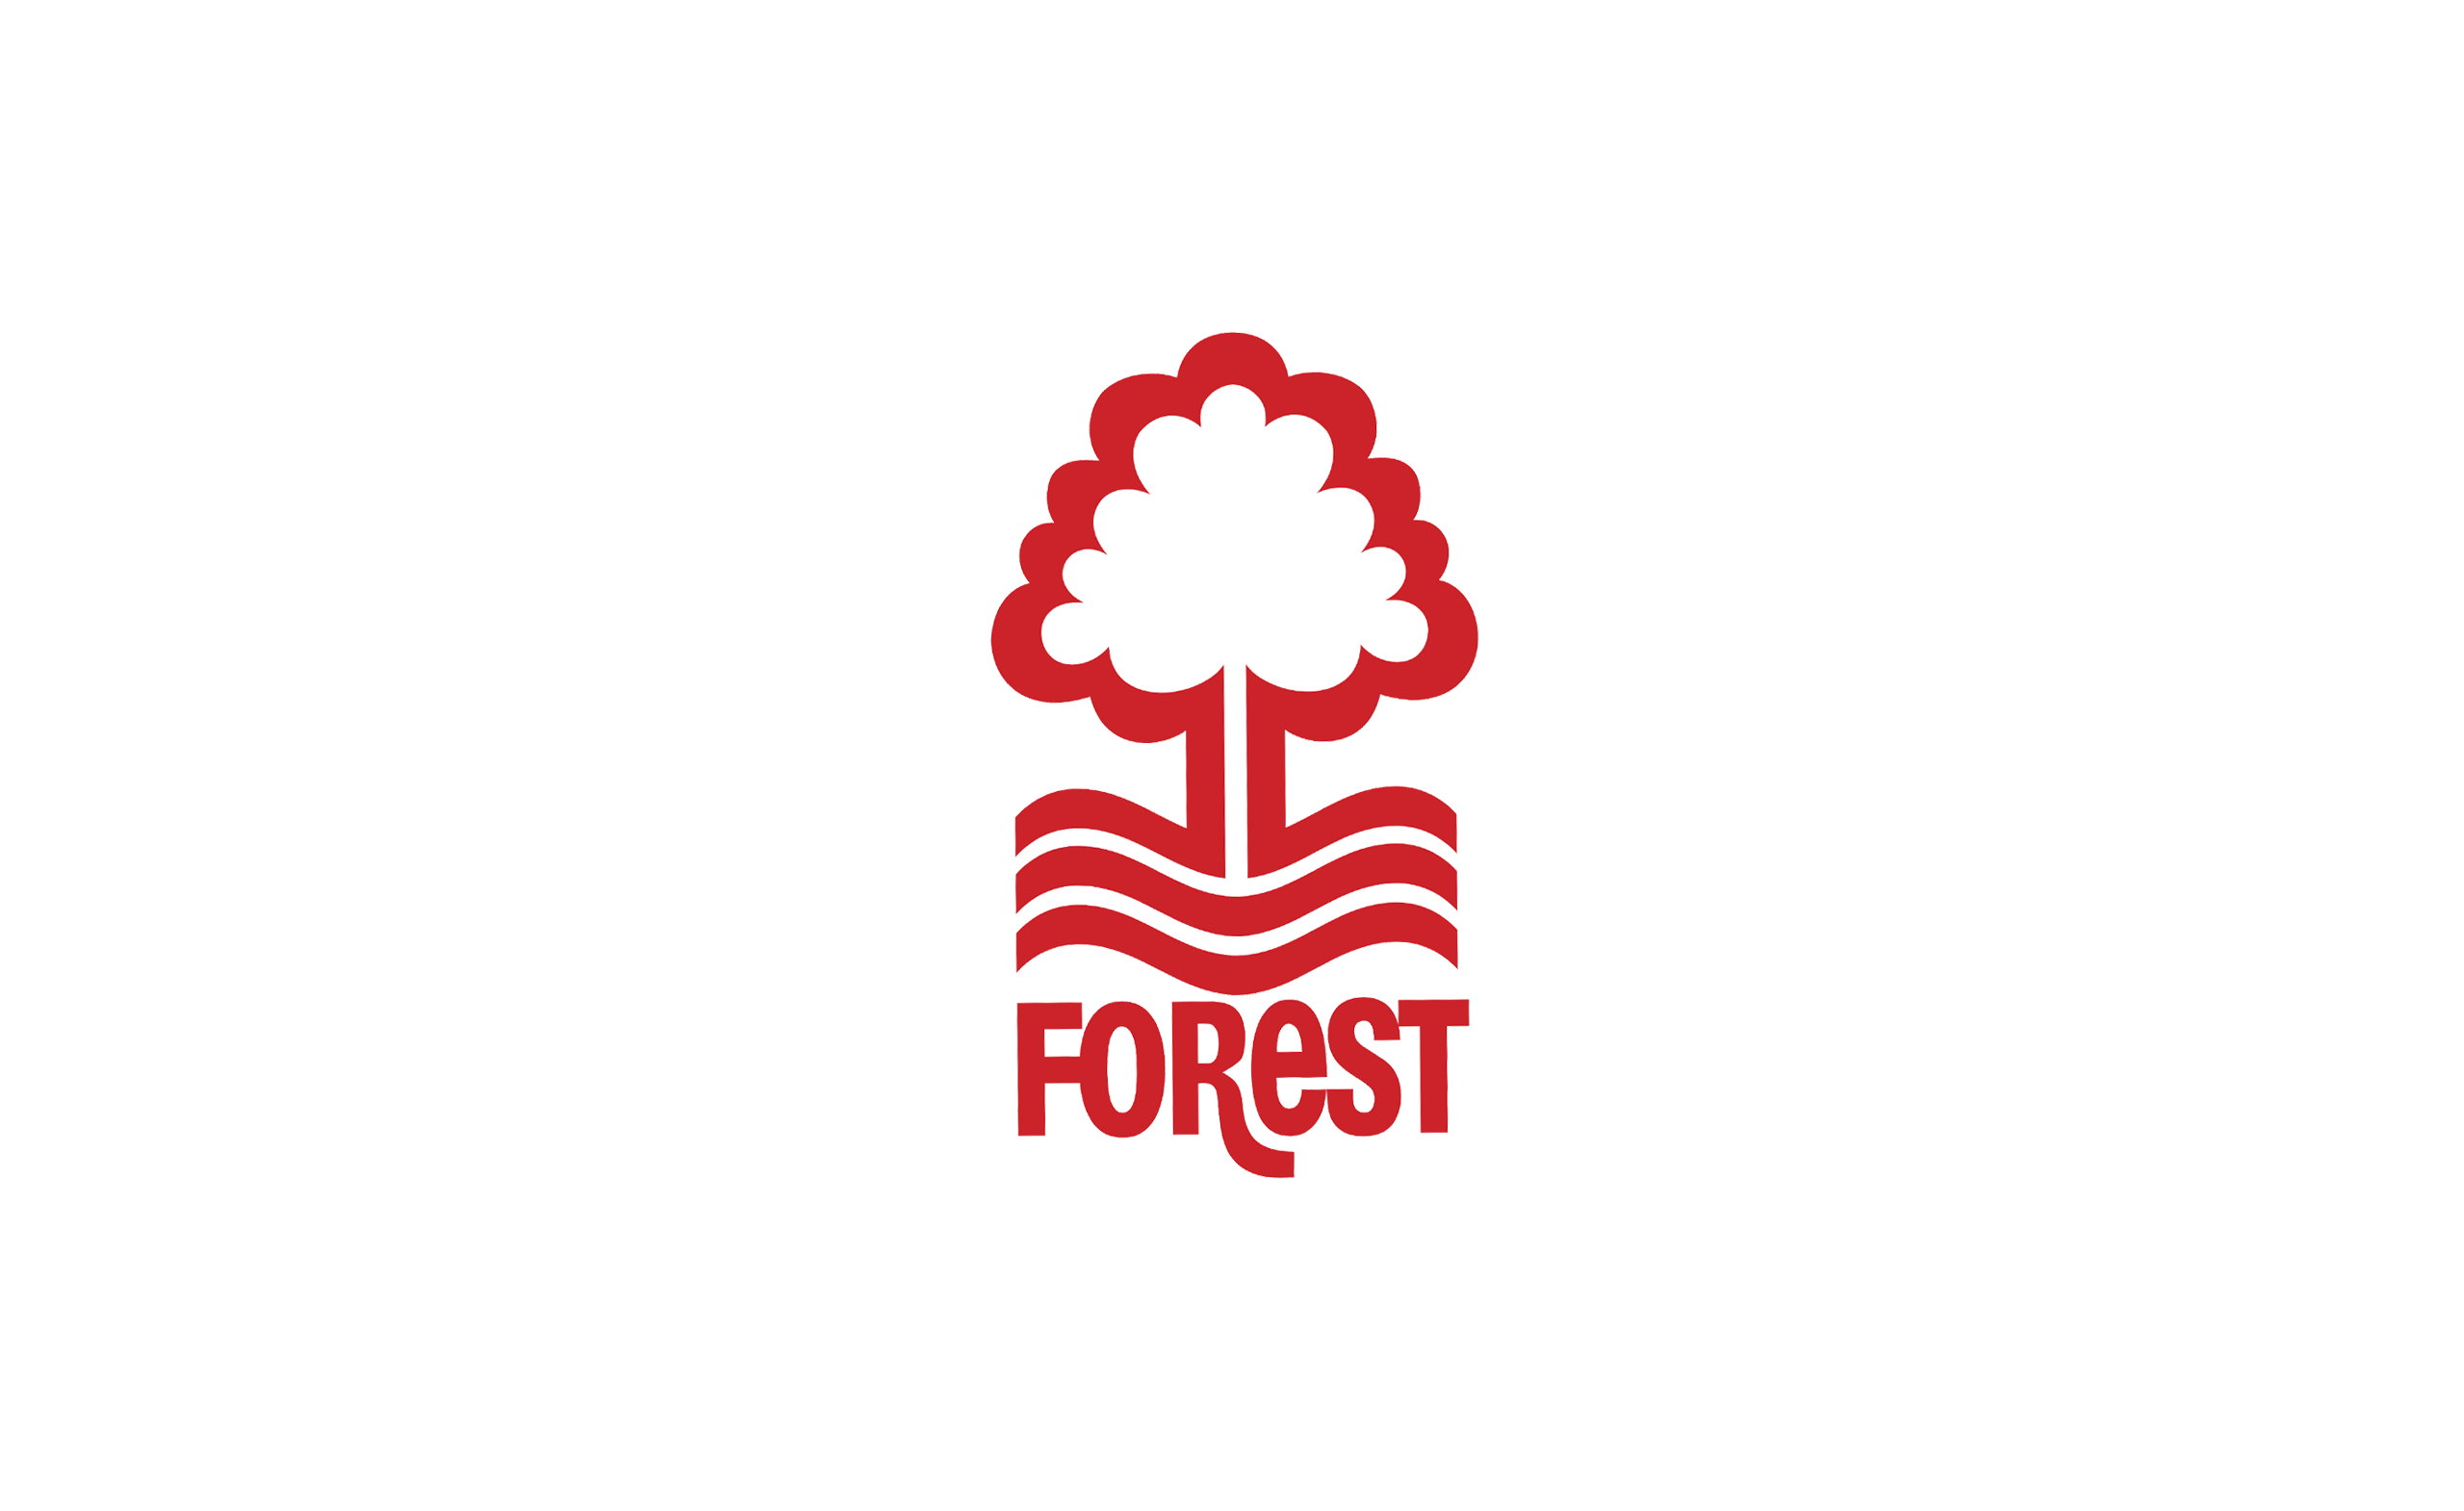 Nottingham forest